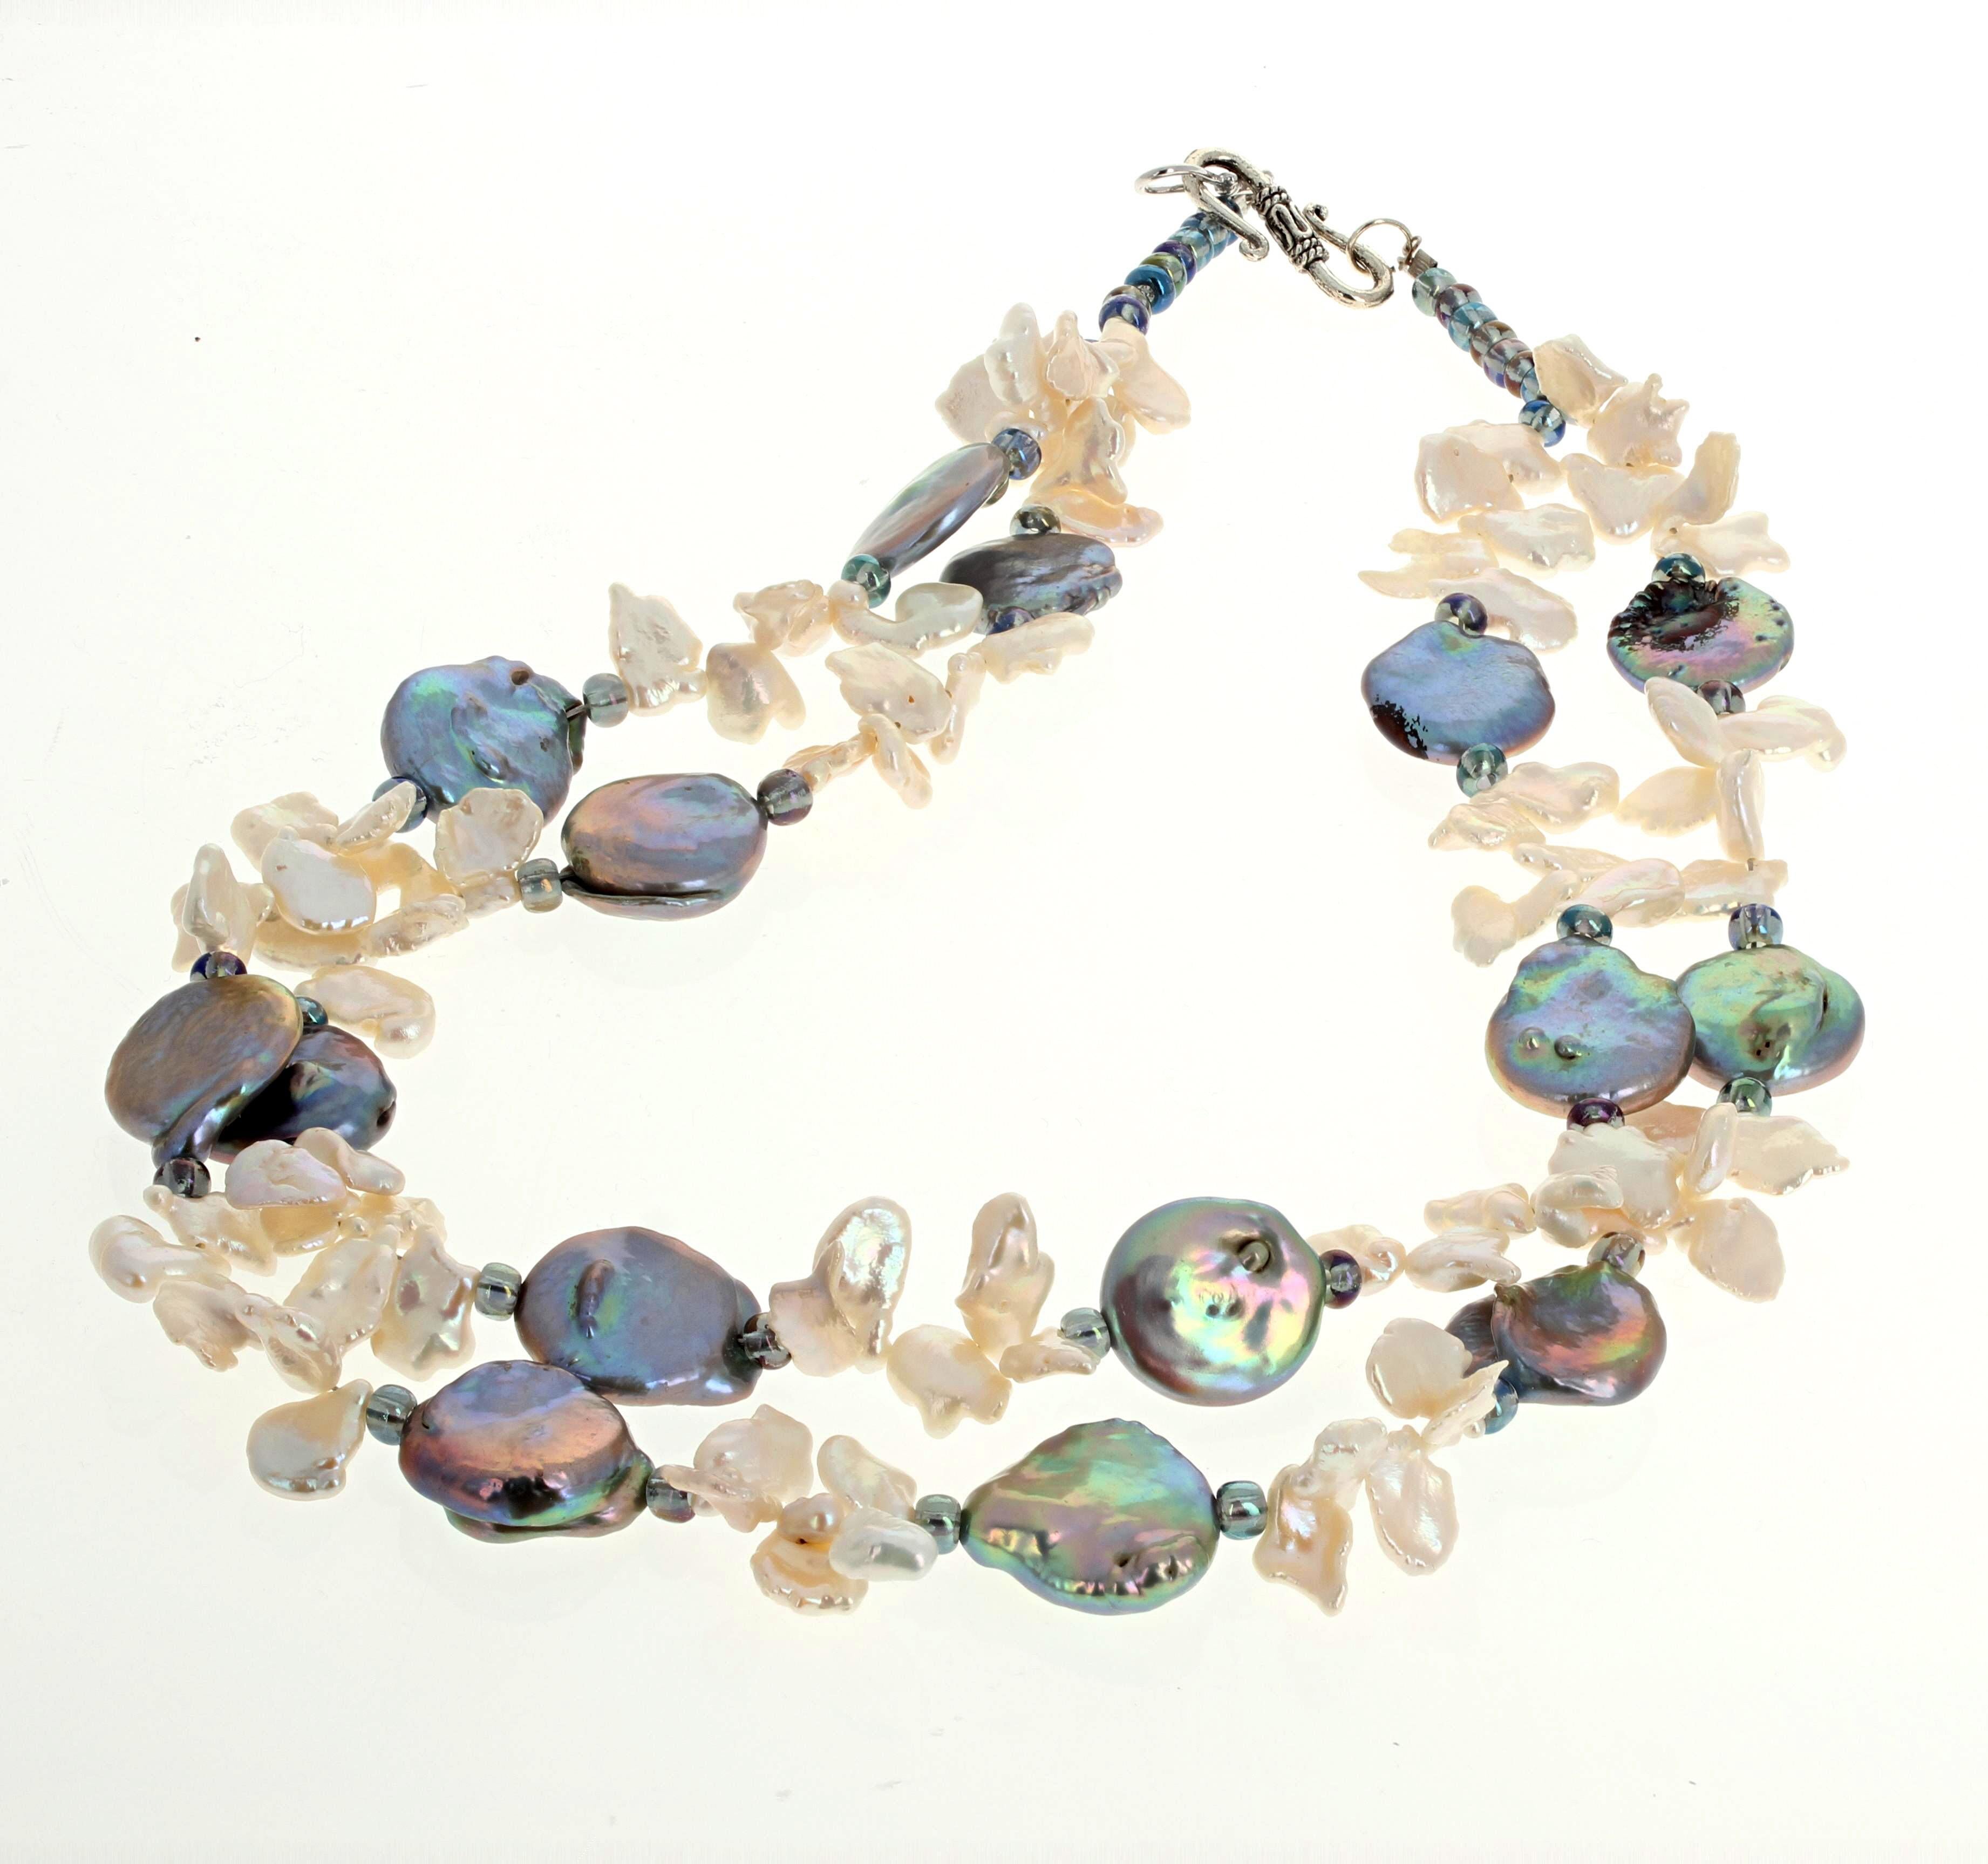 Ce magnifique double rang de perles naturelles, véritables brillantes et hautement polies, est serti d'un fermoir à crochet en argent facile à utiliser.  Les perles rondes et plates mesurent environ 16 mm.  Les perles blanches flottantes sont